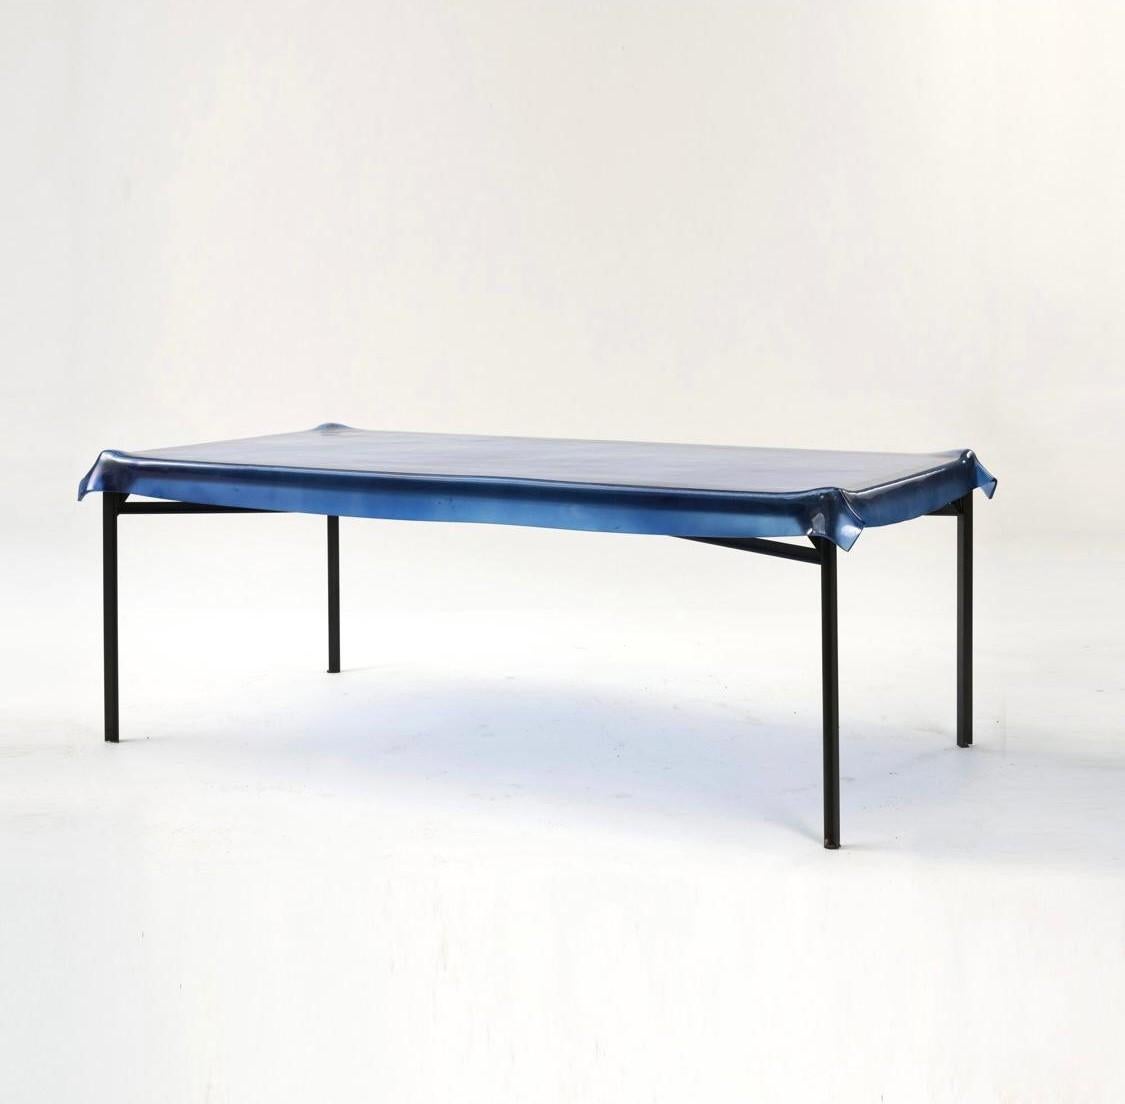 La table de salle à manger Philippe Starck illusion témoigne de l'approche caractéristique du designer en matière de design : innovante, fluide et imprégnée d'une touche de fantaisie. Né en 1949 à Paris, Philippe Starck s'est taillé une place de